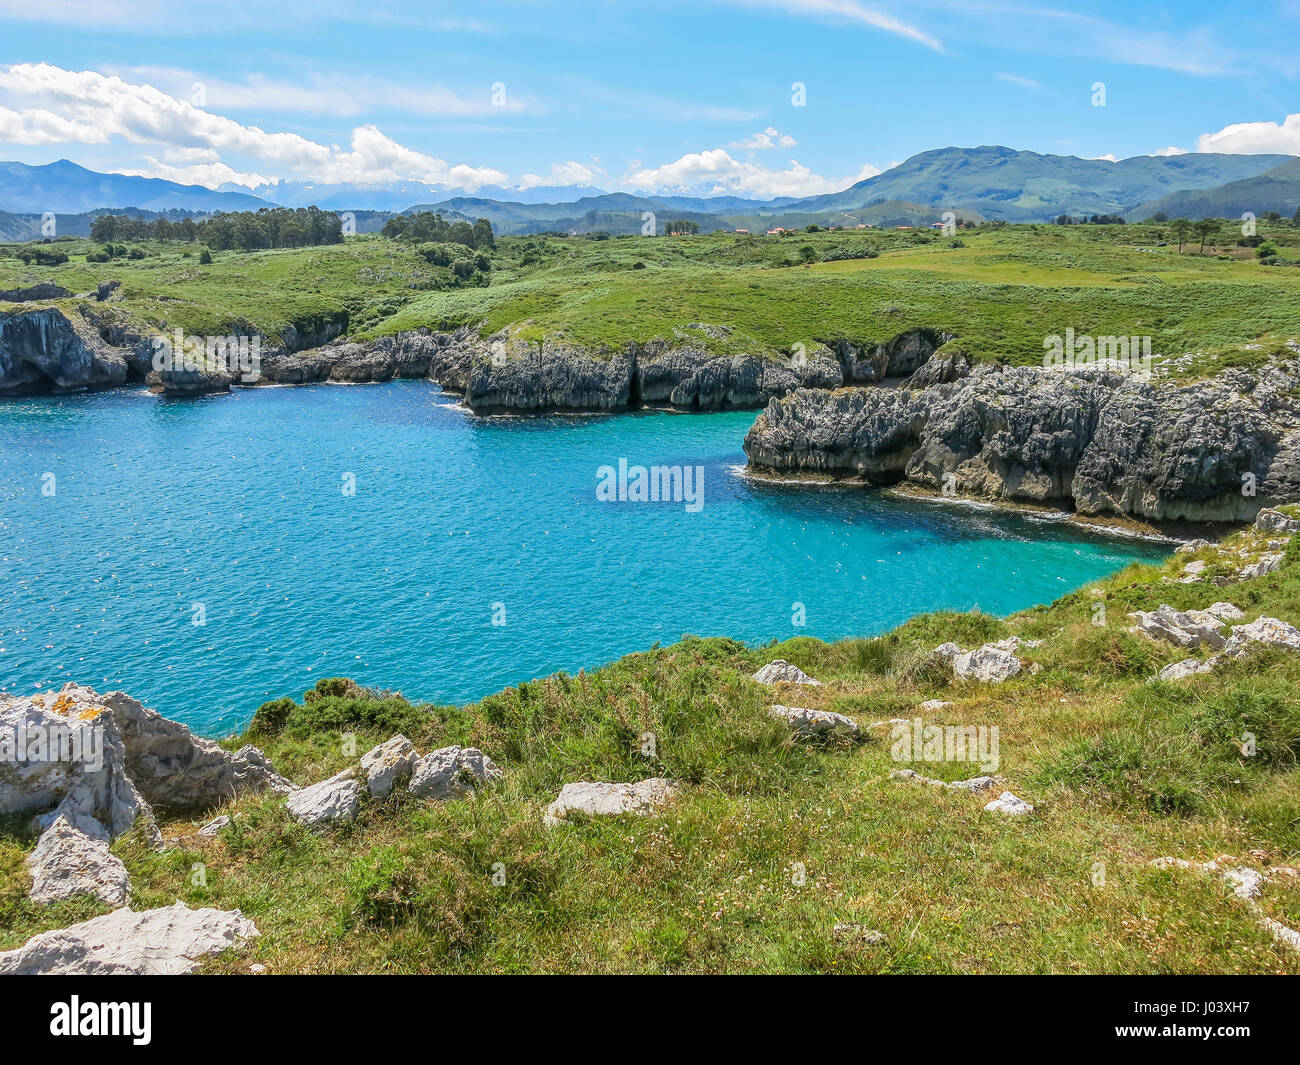 Scenic coastline at Cabo de Mar, between Llanes and Ribadesella, Asturias, northern Spain Stock Photo